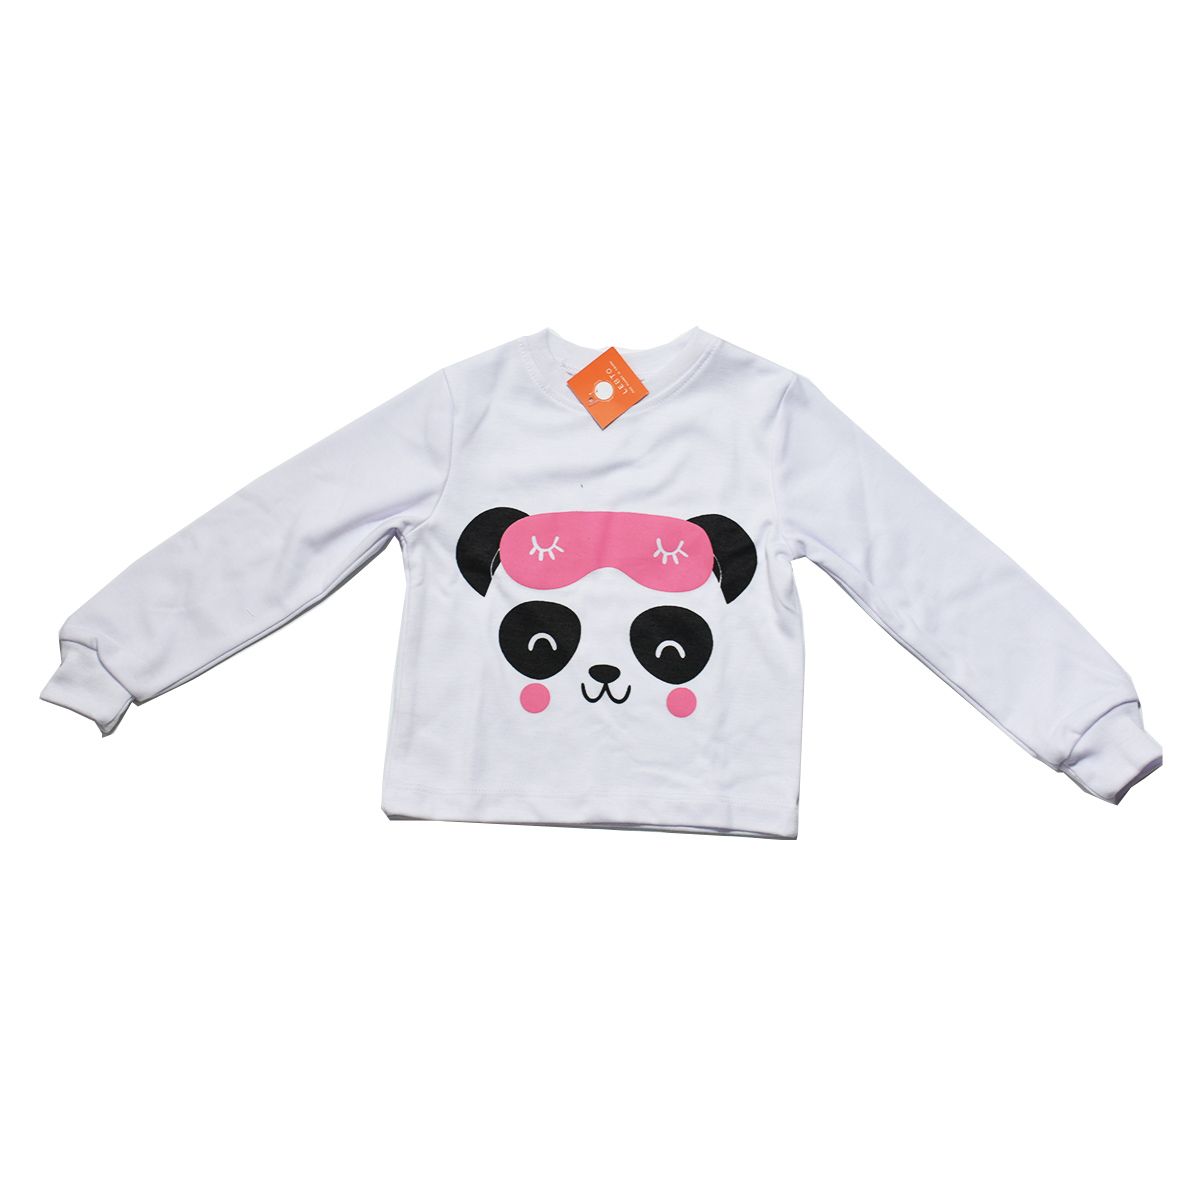 ست تی شرت و شلوار بچگانه لبتو مدل Panda کد 5227 -  - 2